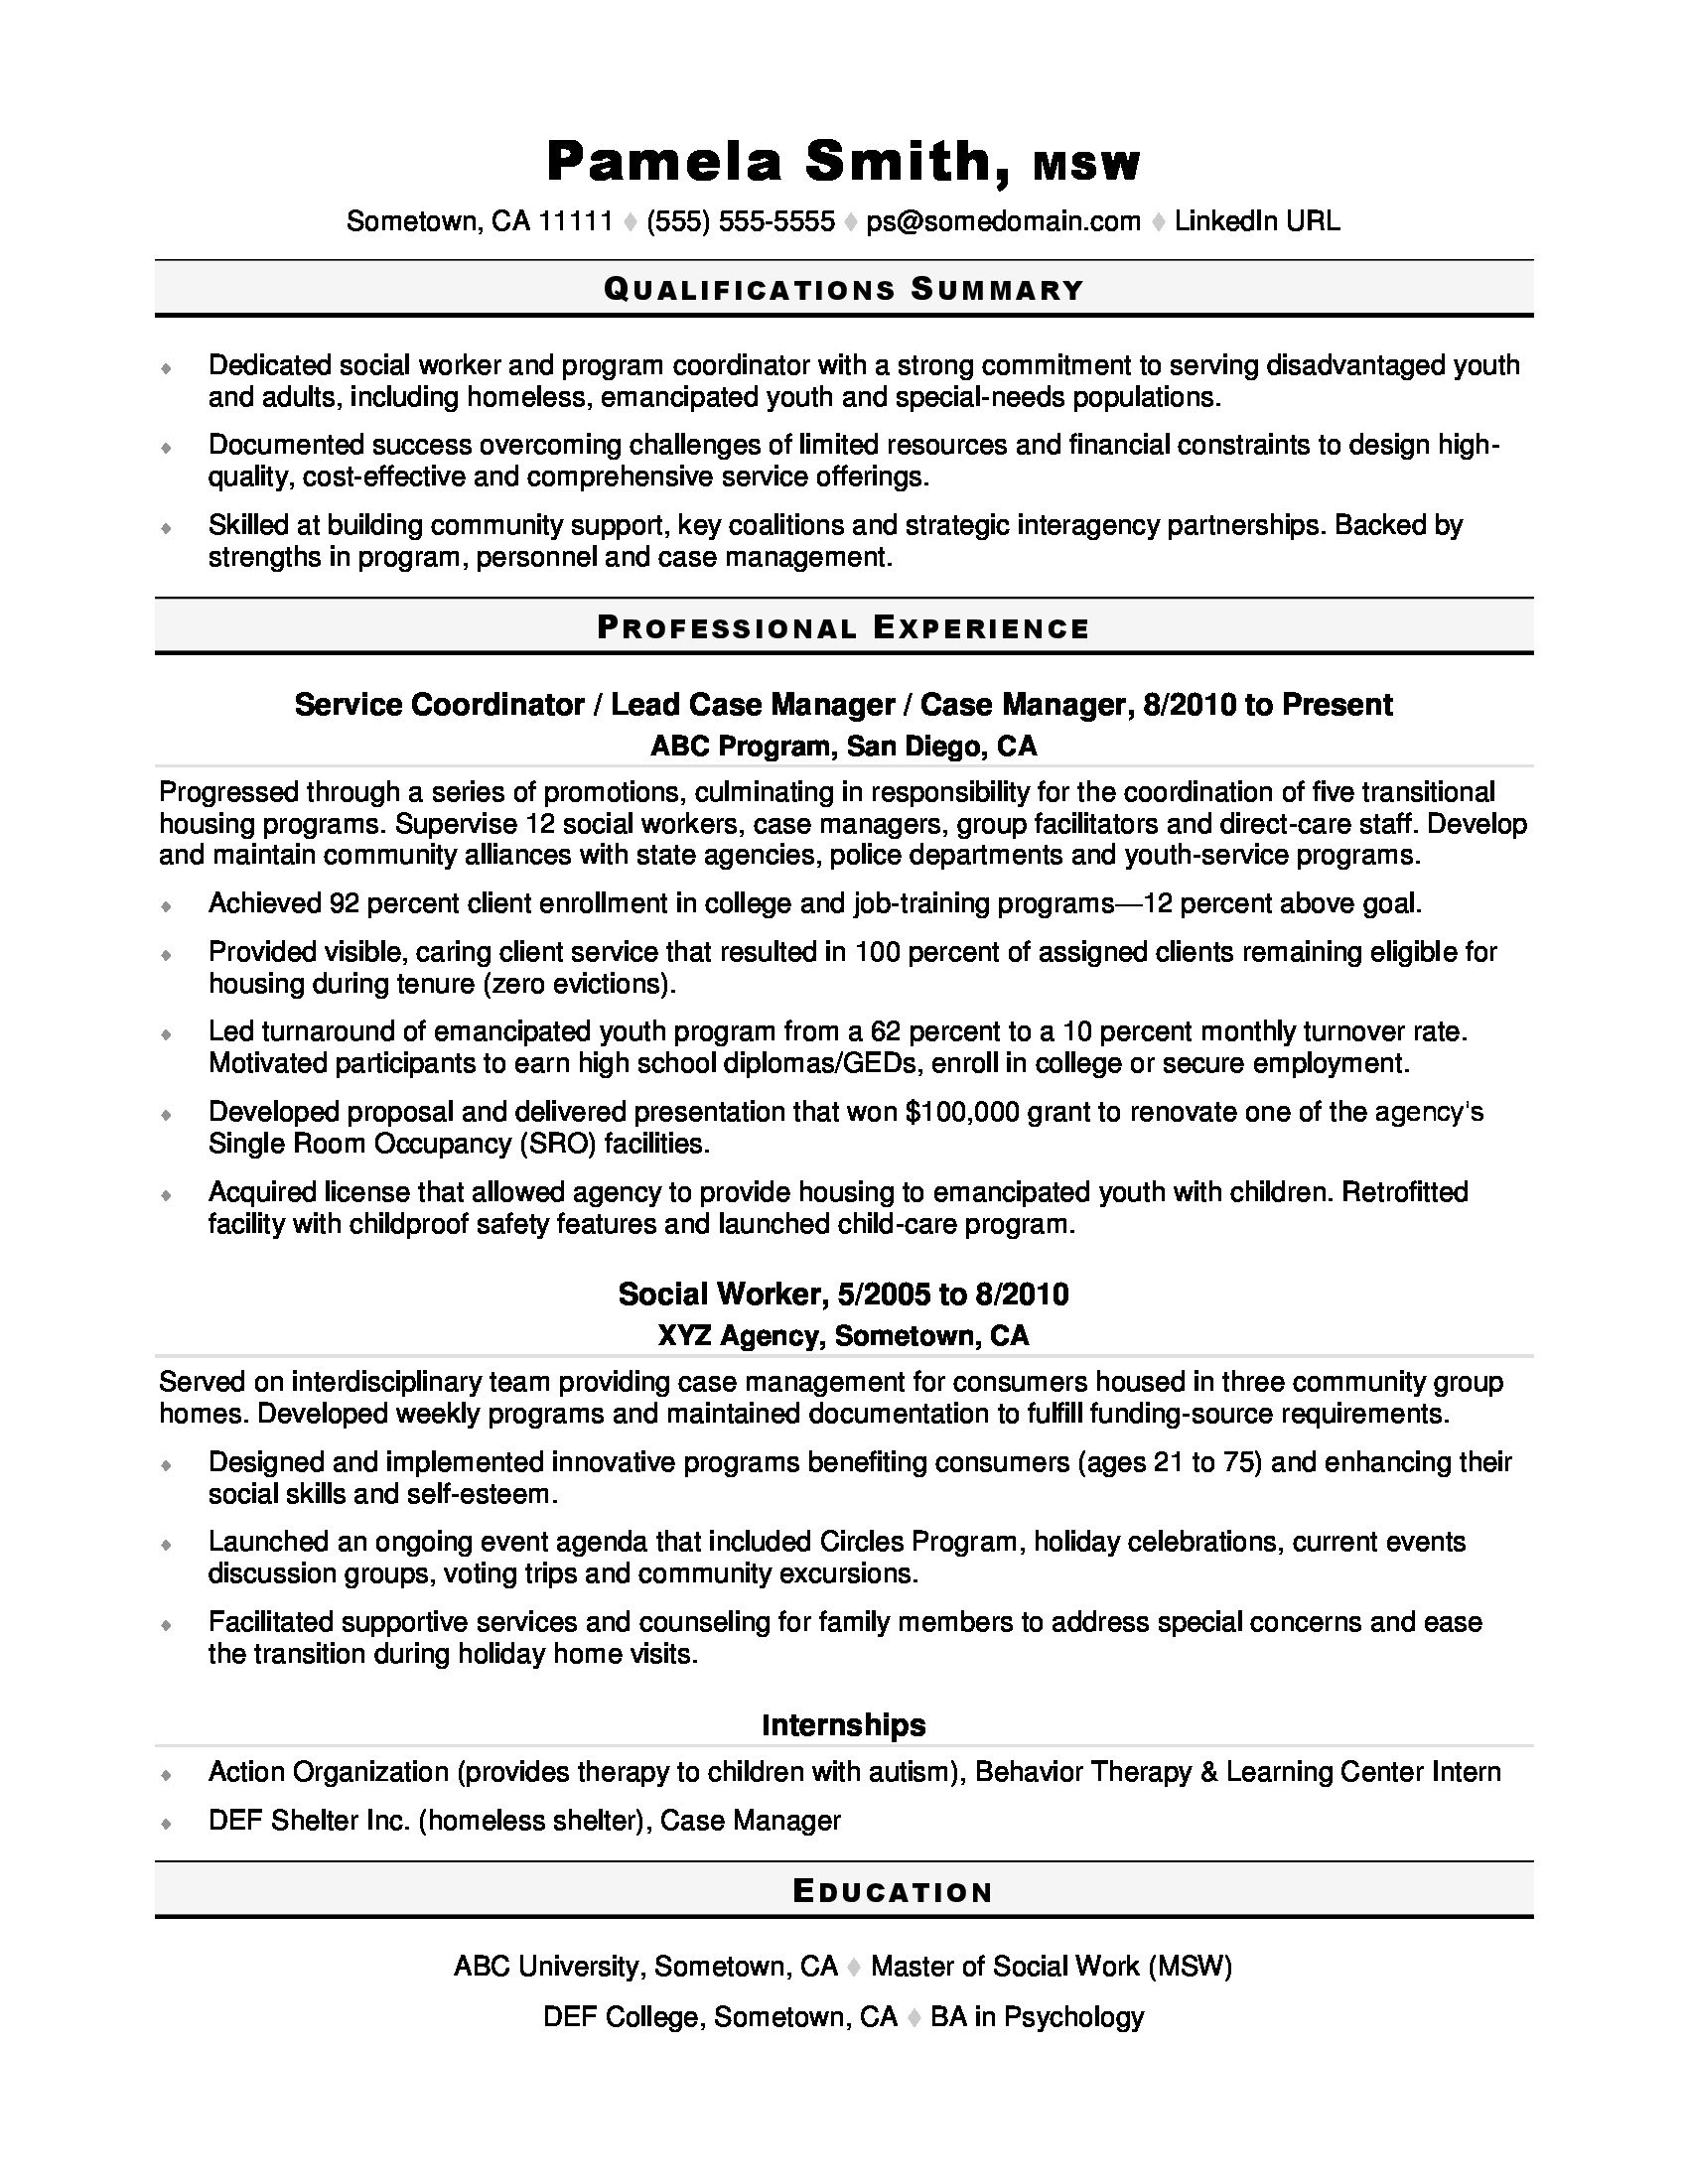 Resume Sample for Fresh Graduate social Work social Worker Resume Sample Monster.com